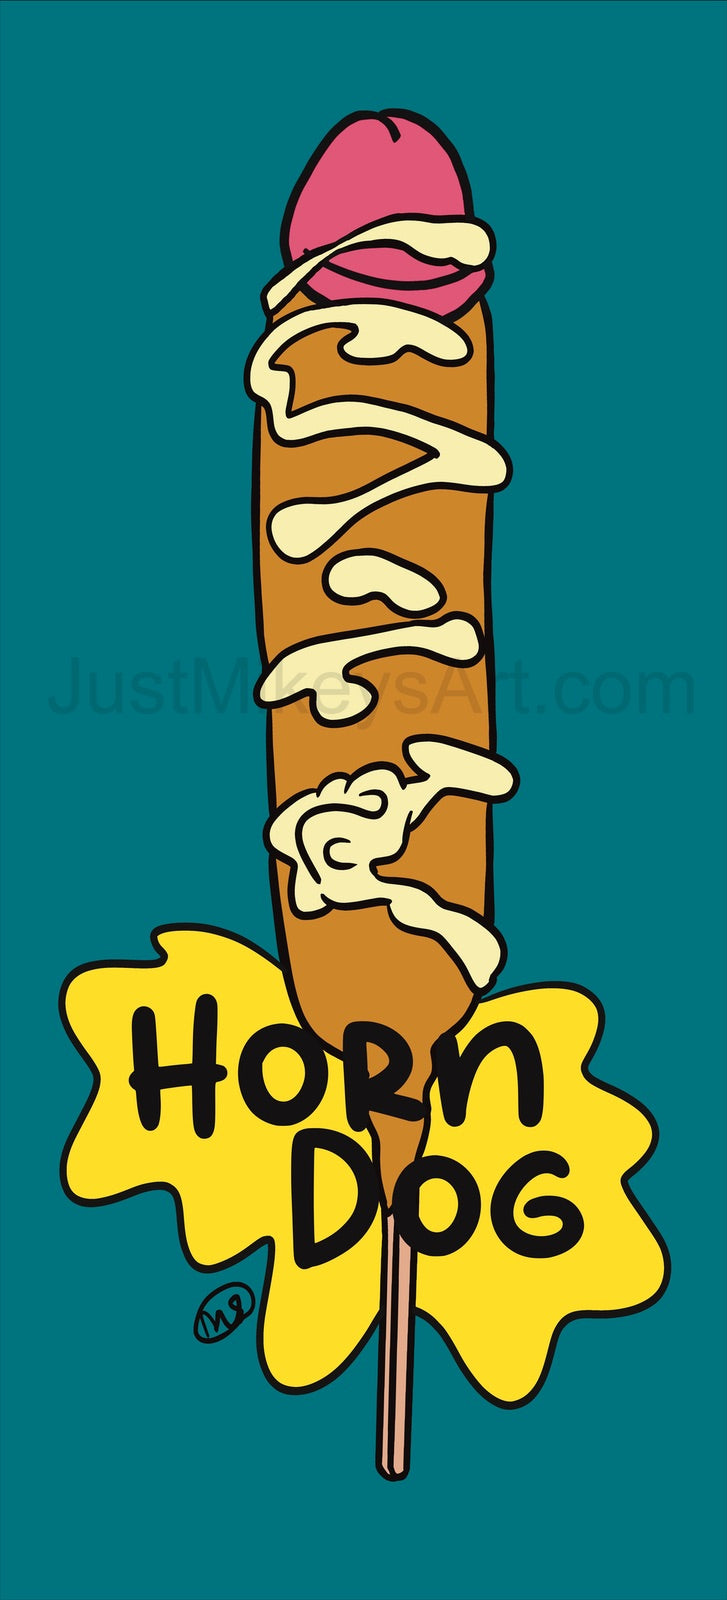 Horn Dog - Framed Art